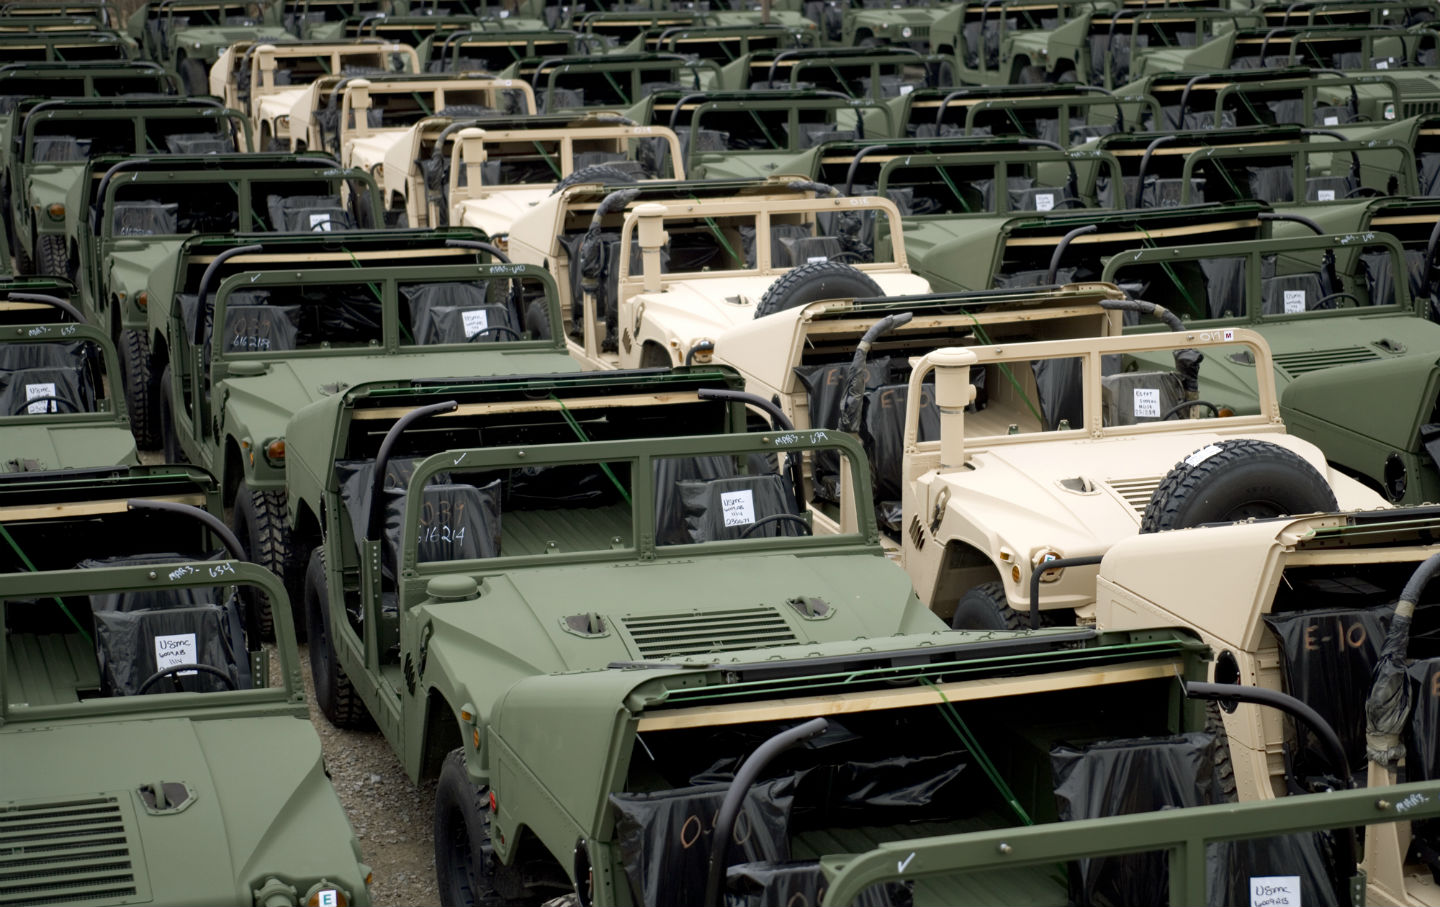 Army Humvees